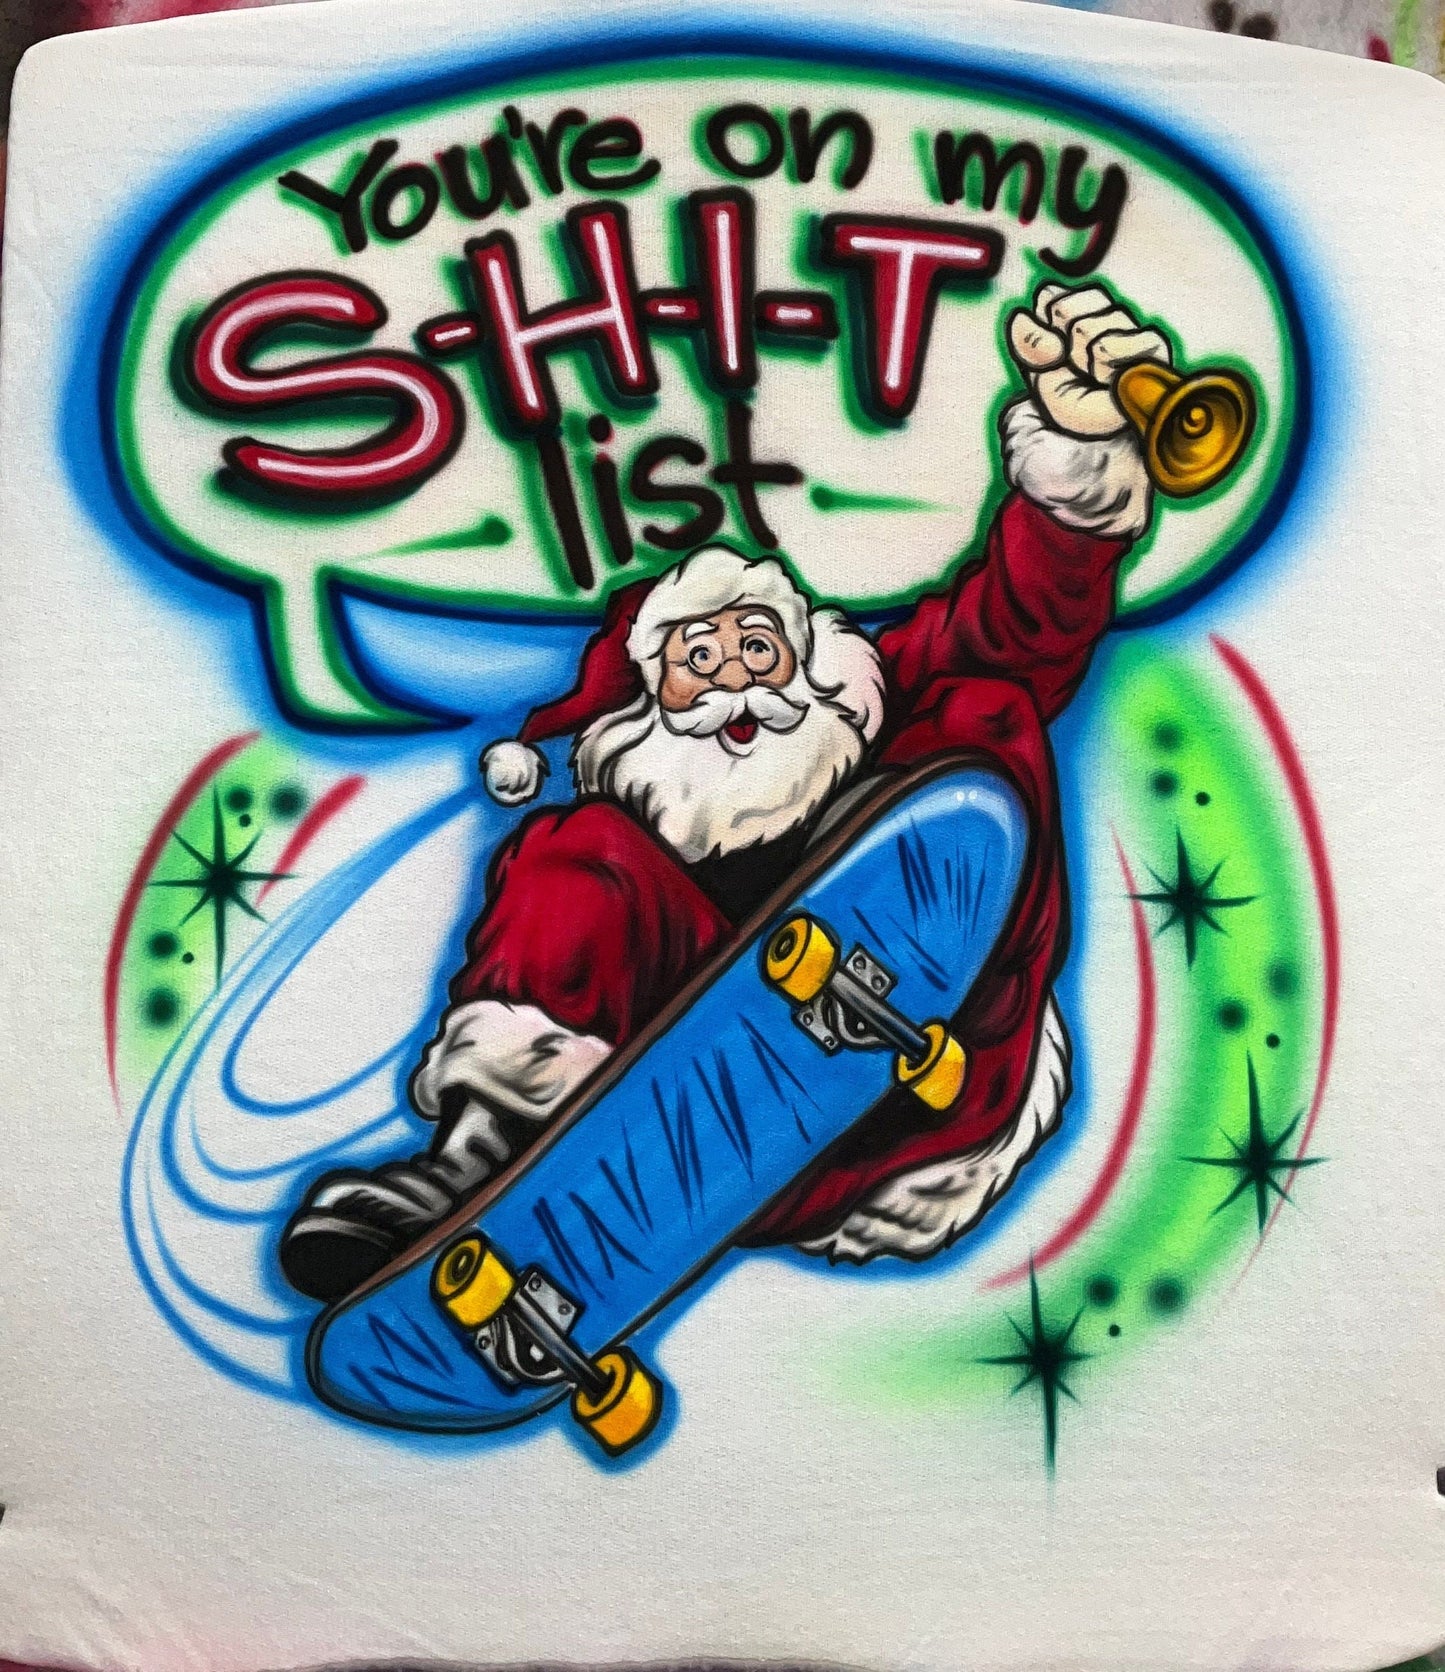 Airbrush T-shirt - Christmas - Santa - Skateboard - List